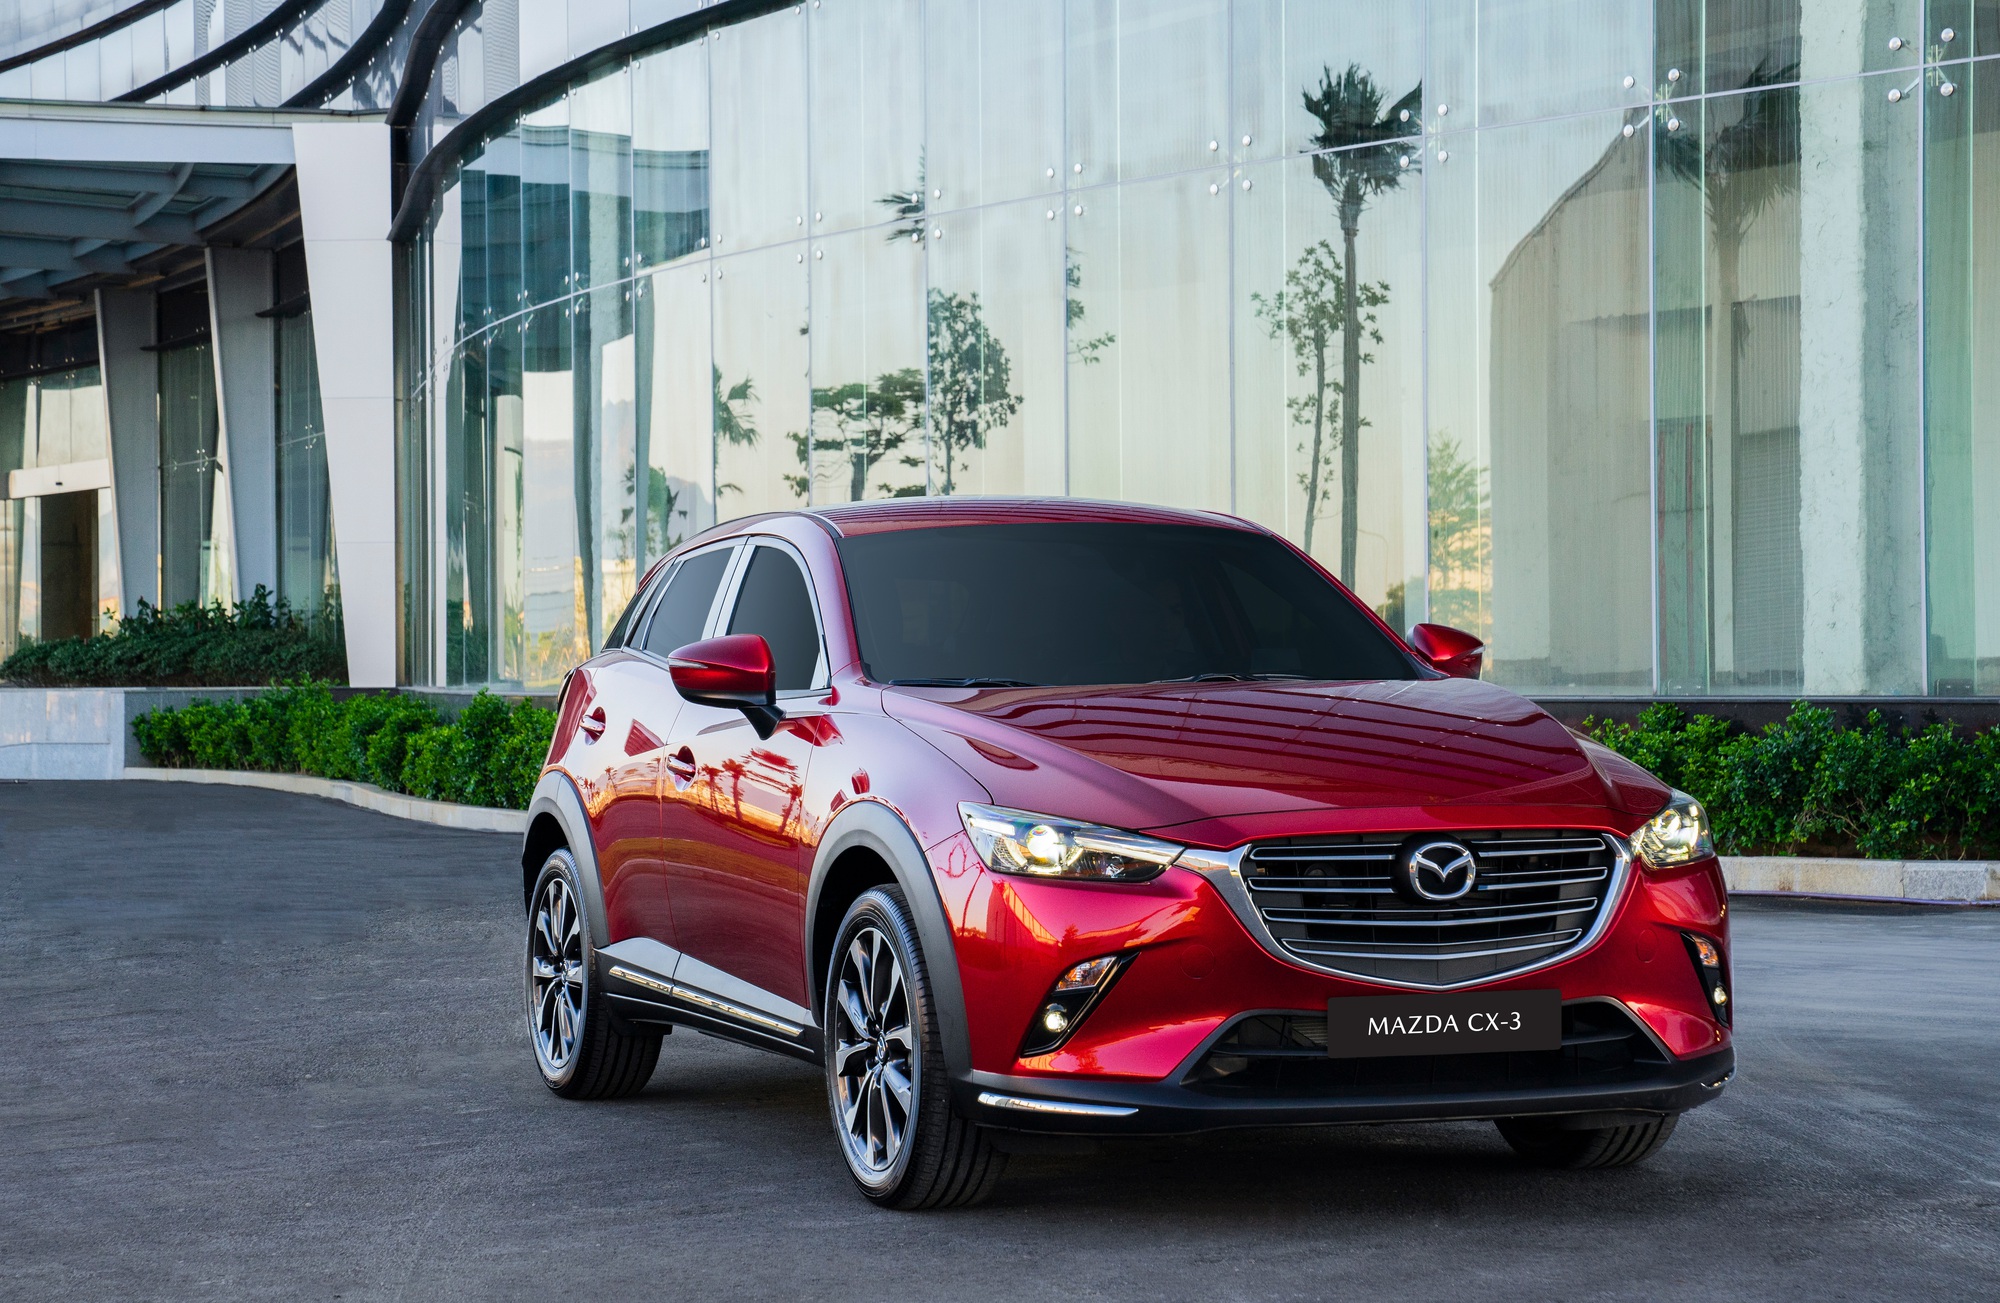 Tầm giá 600 triệu, khách hàng có thể sở hữu những mẫu xe nào của Mazda? - Ảnh 5.